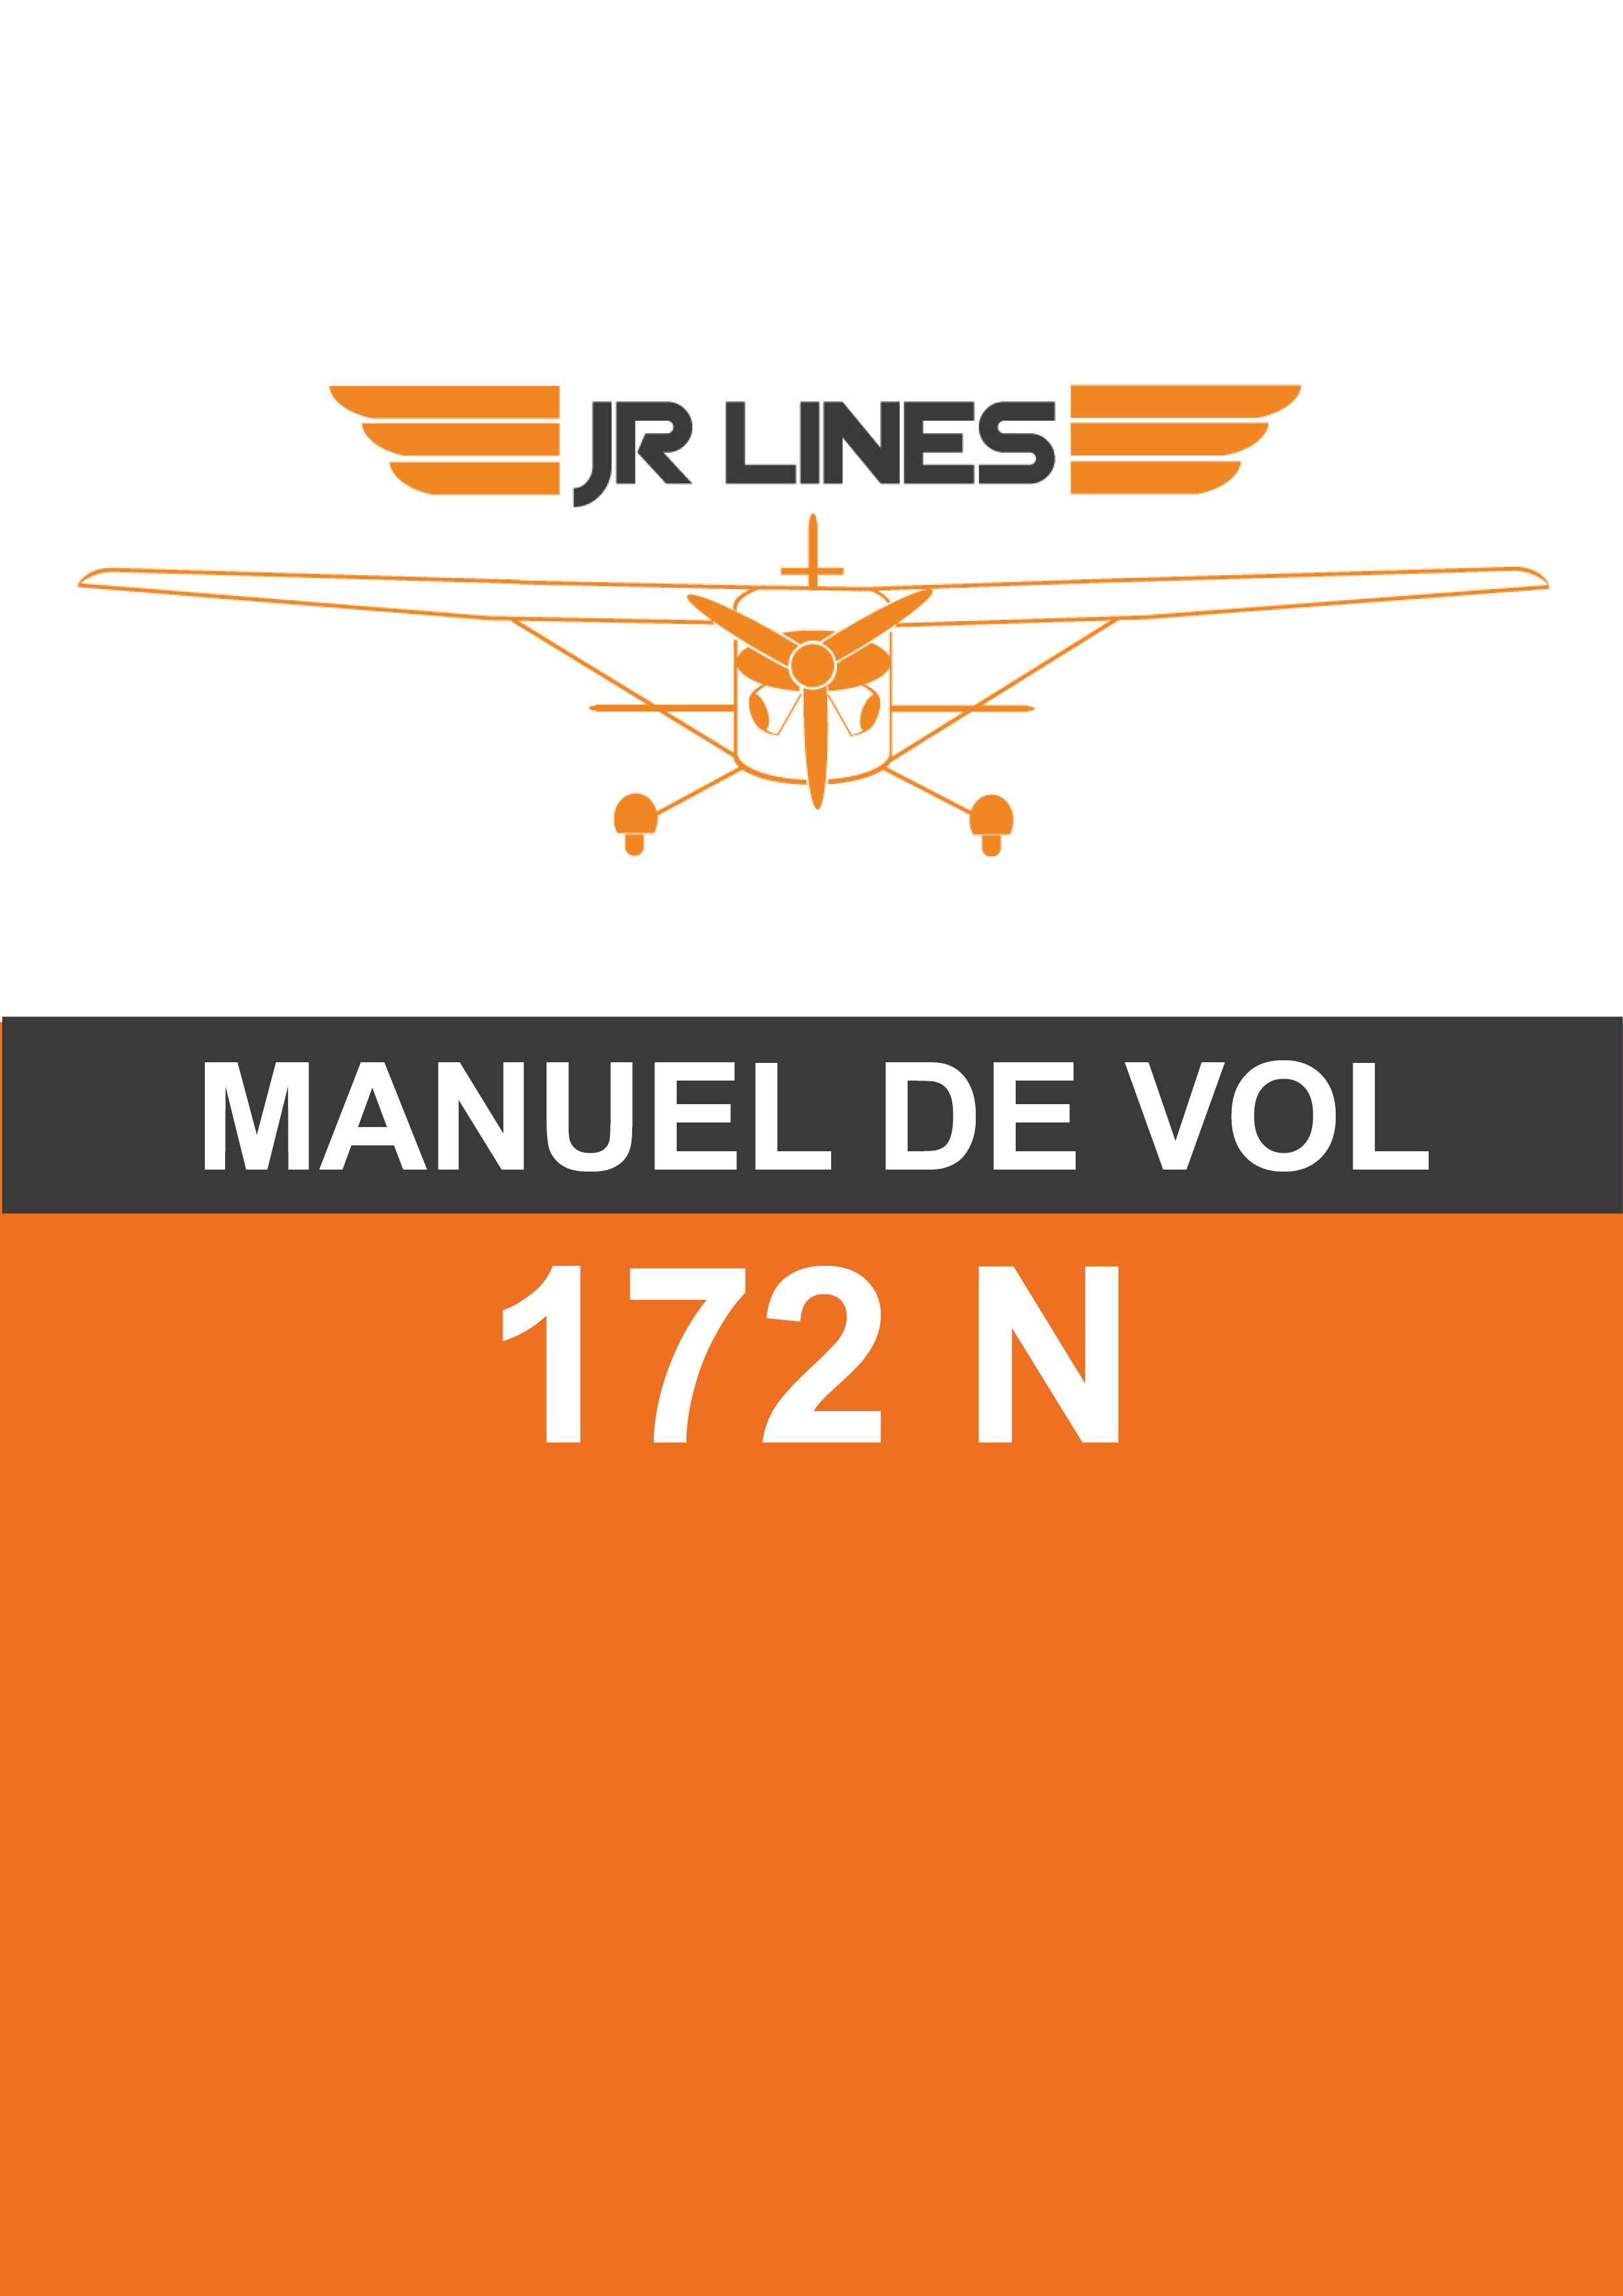 JR LINES - Manuel de vol 172 N